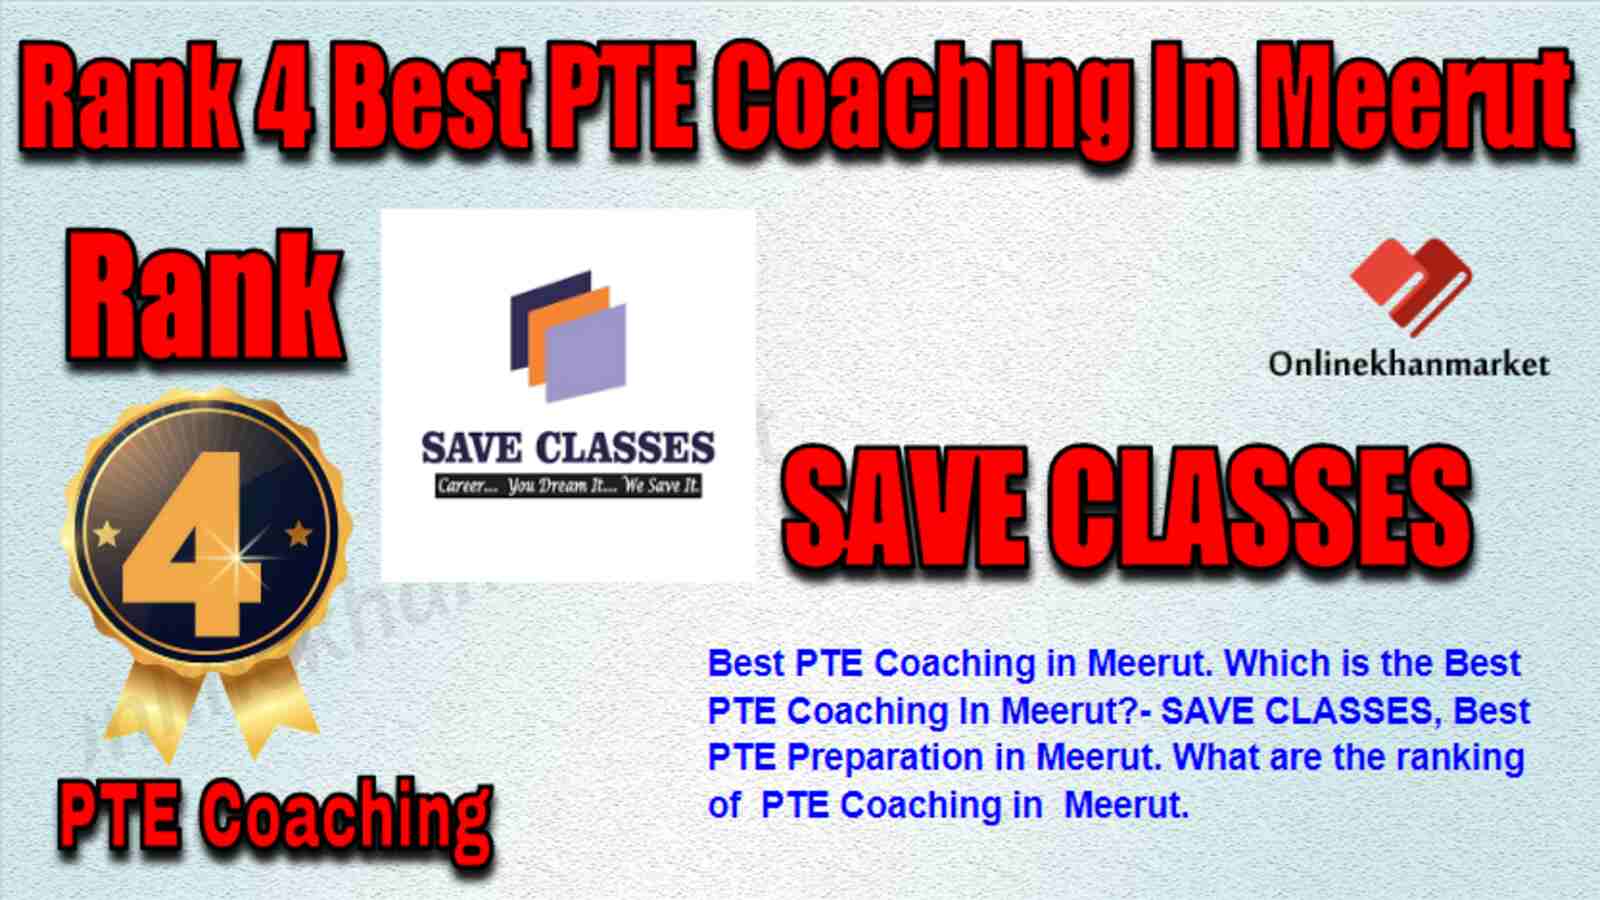 Rank 4 Best PTE Coaching in Meerut